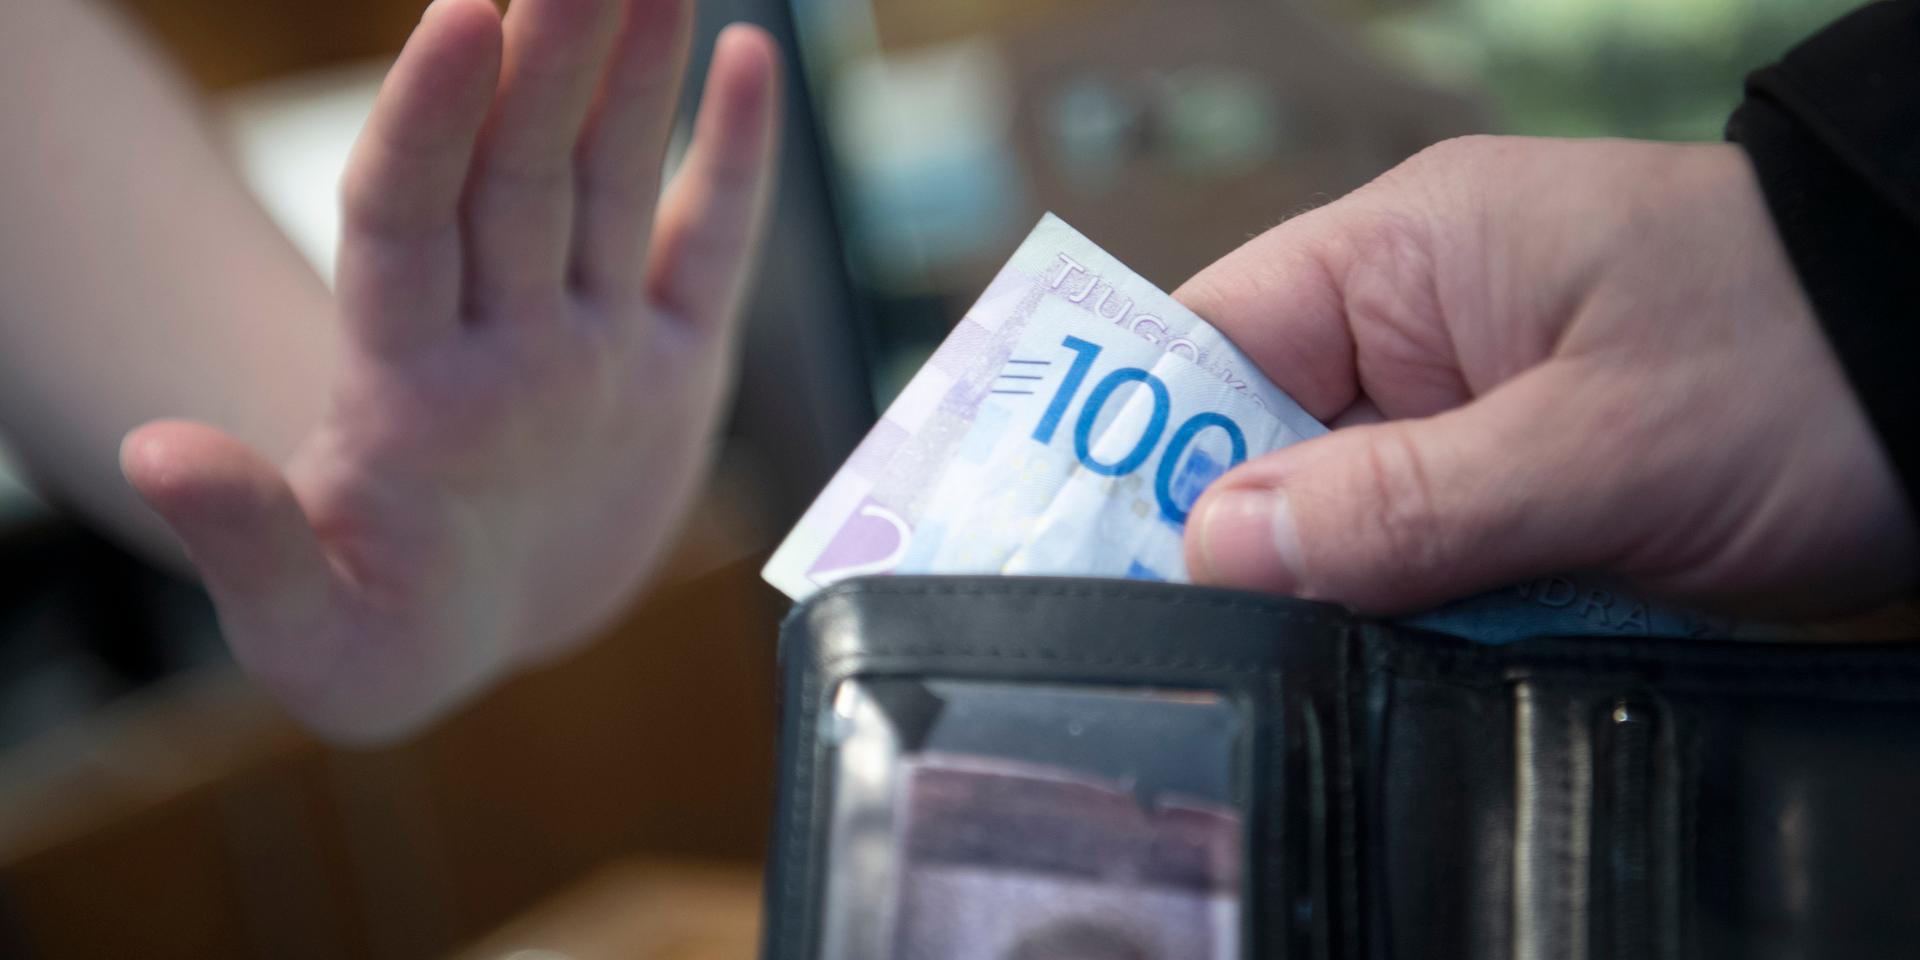 Den sjunkande kontanthanteringen gör att allt färre kontanter finns i omlopp i Sverige. Flera grupper i samhället riskerar att drabbas av detta, inte minst den äldre generationen, skriver debattörerna.